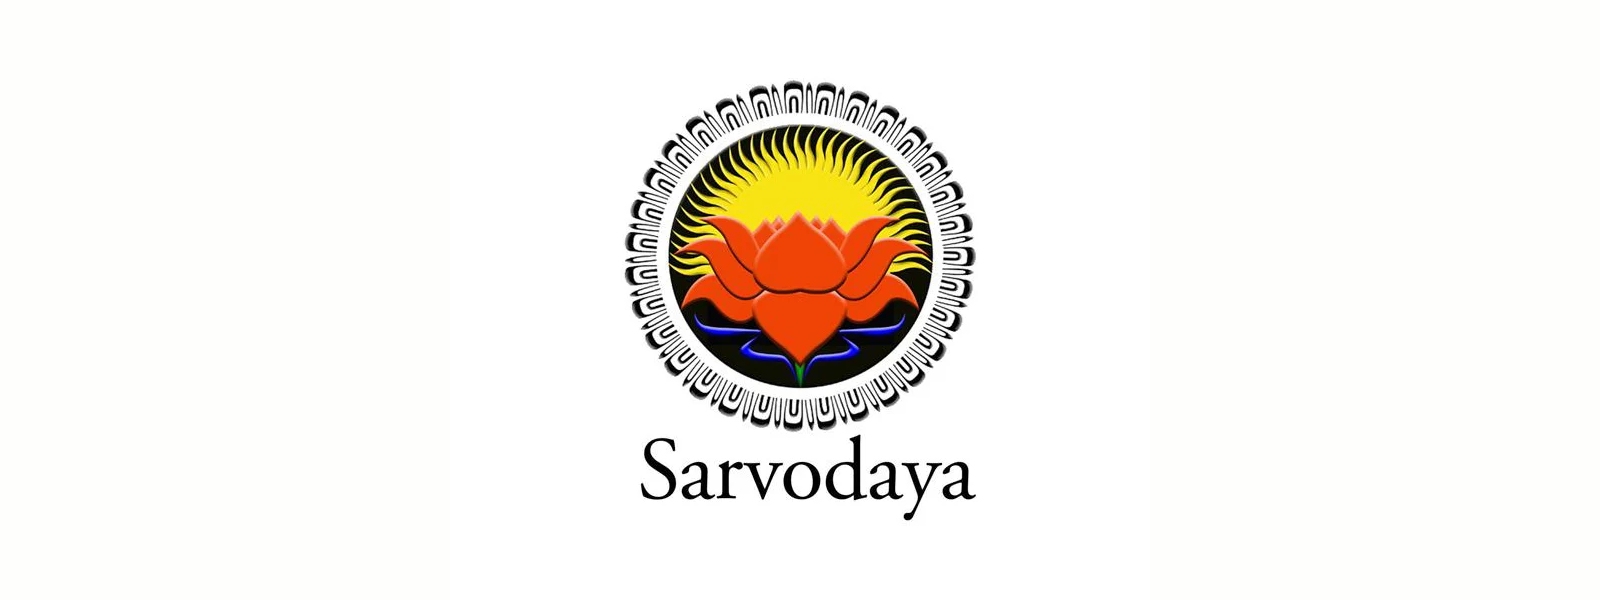 Sarvodaya Executive Director Chamindha Rajakaruna passes away